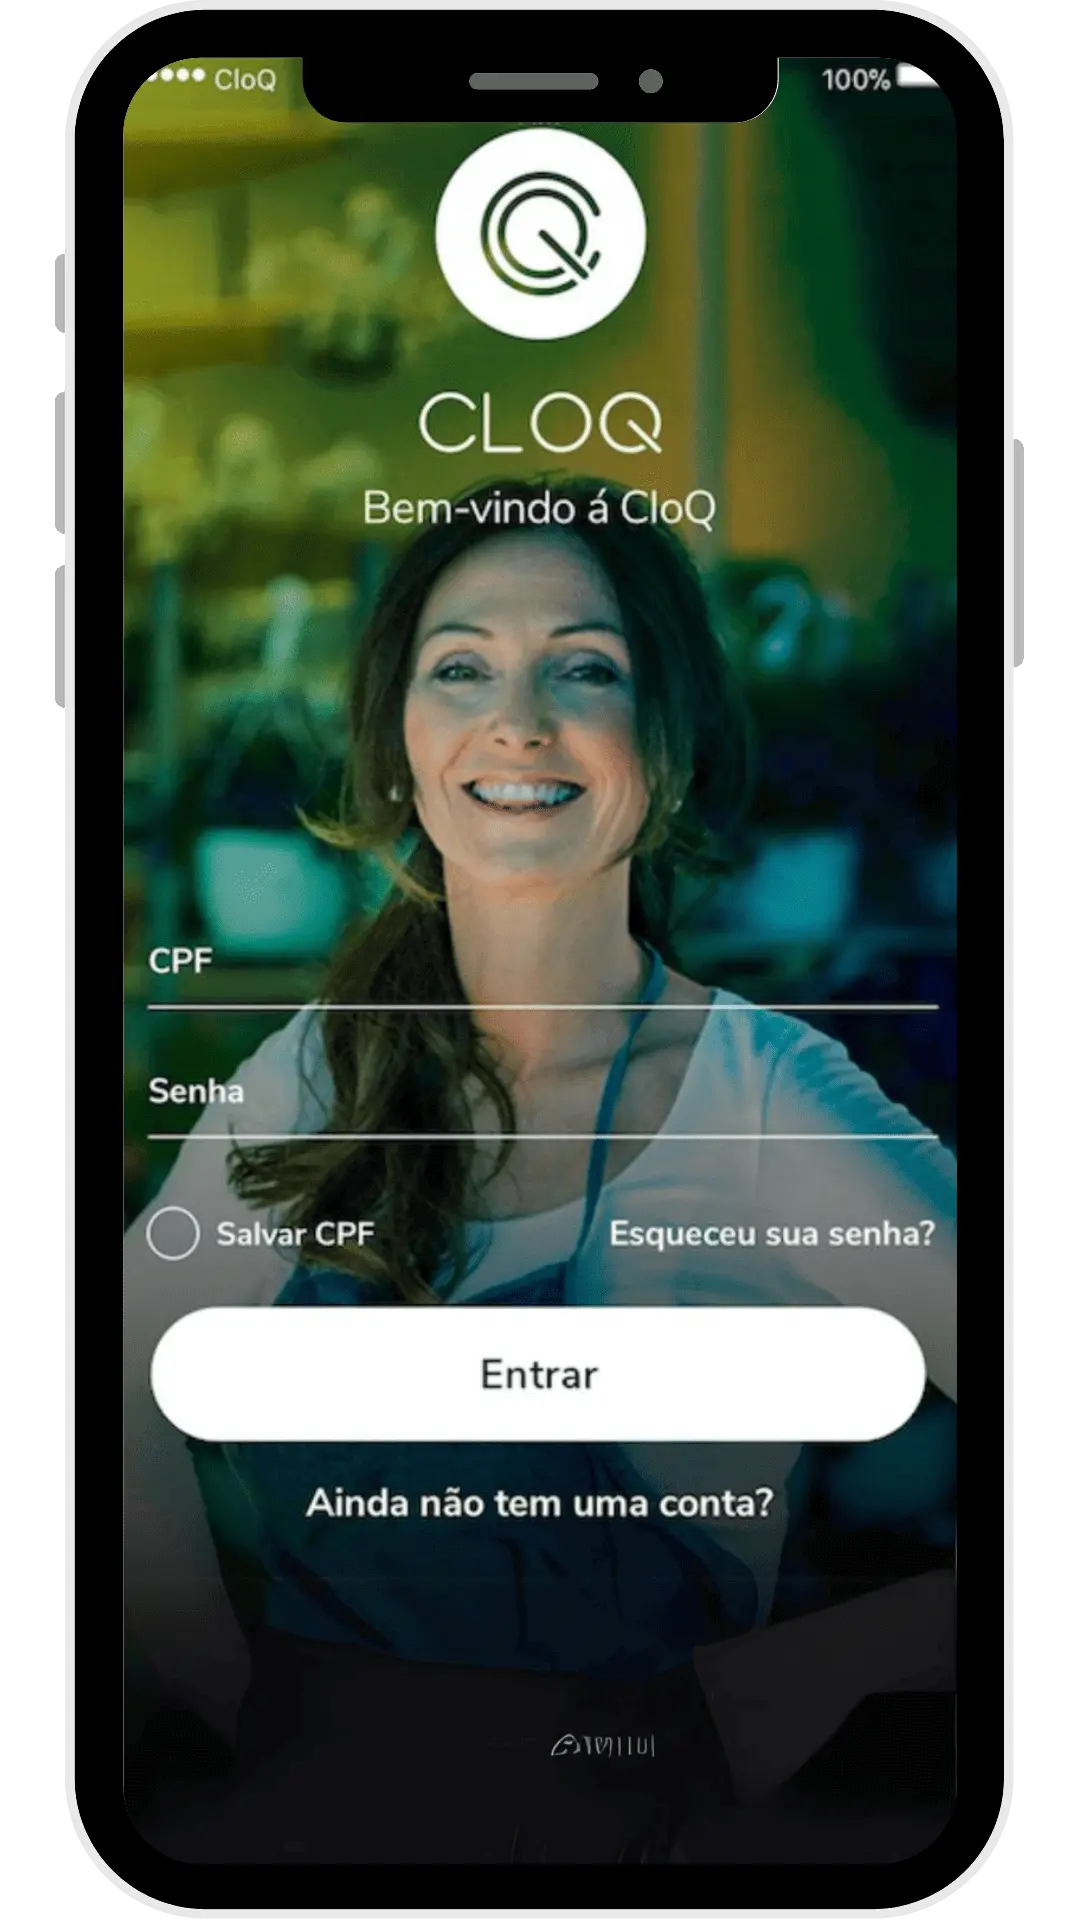 Tela do app da CloQ